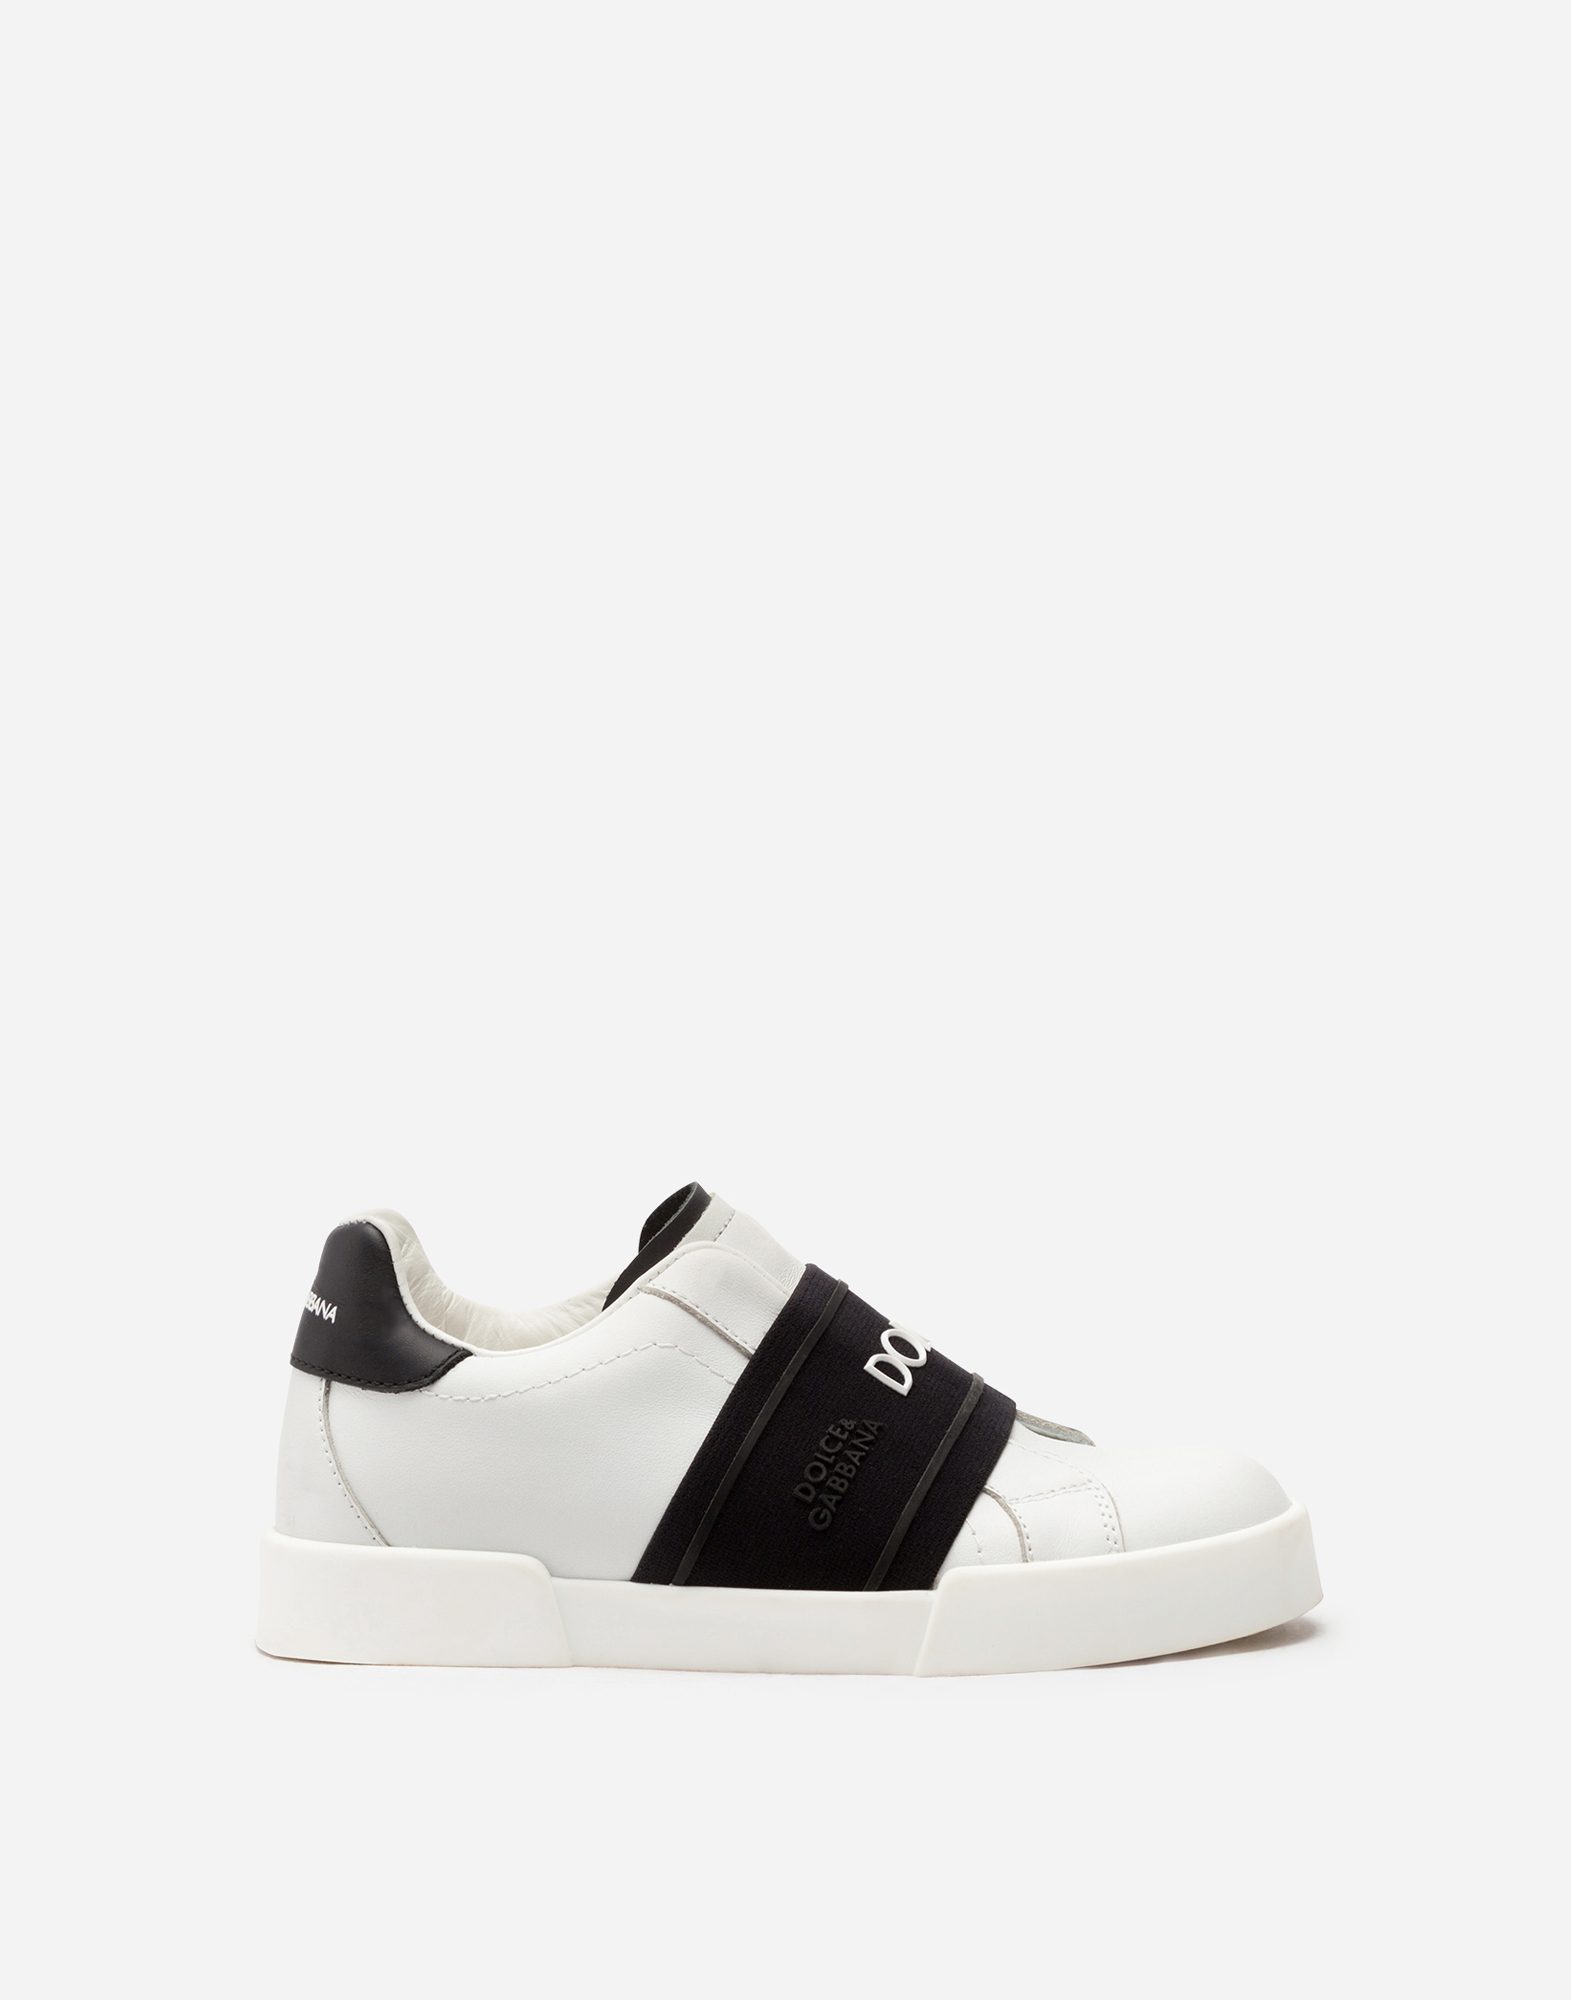 Calfskin slip-on Portofino light sneakers in White/Black